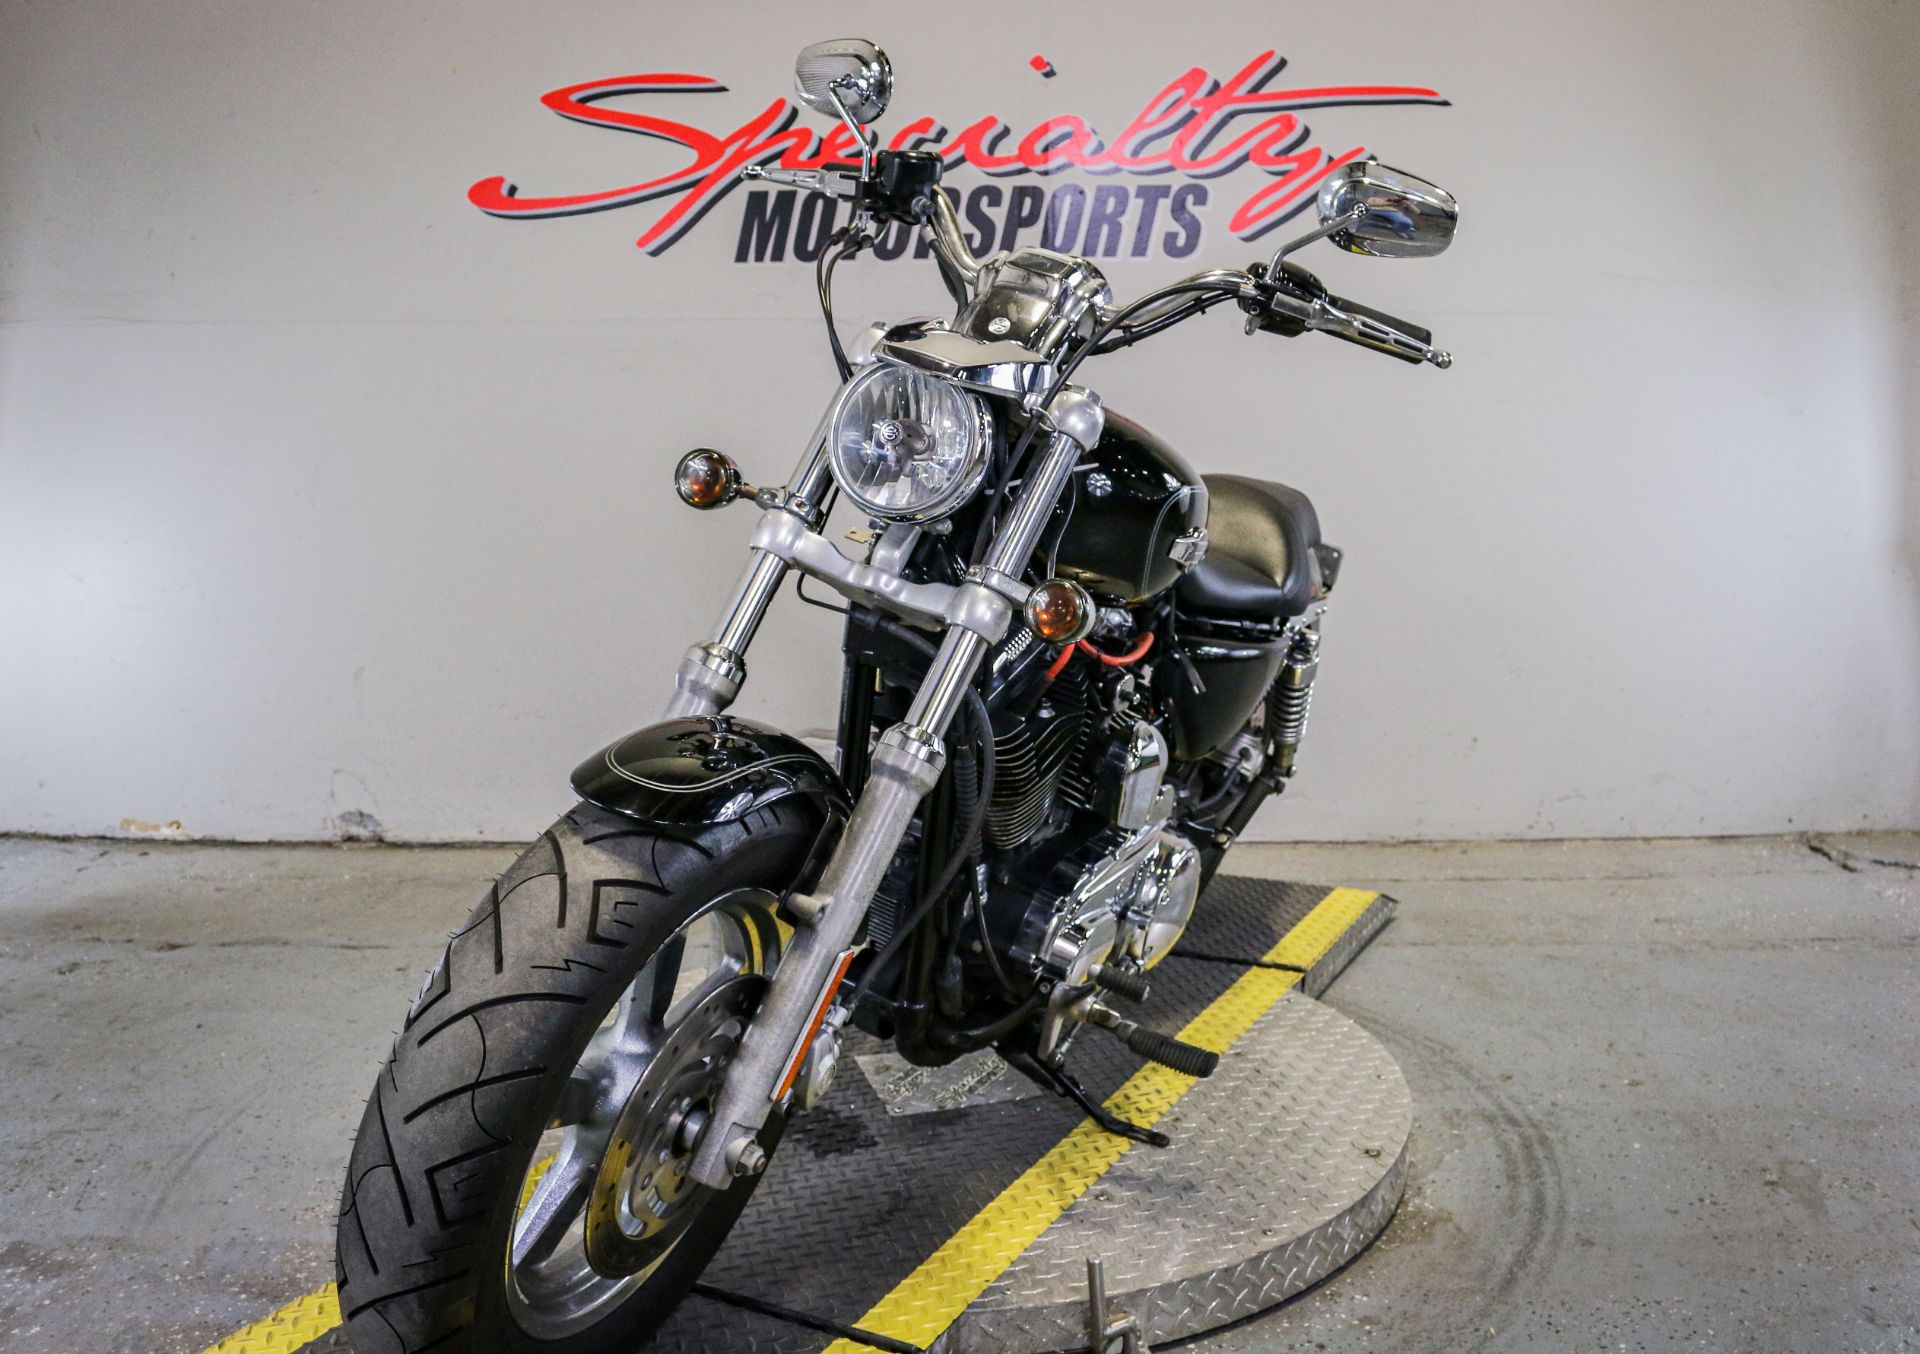 2013 Harley-Davidson Sportster® 1200 Custom in Sacramento, California - Photo 5